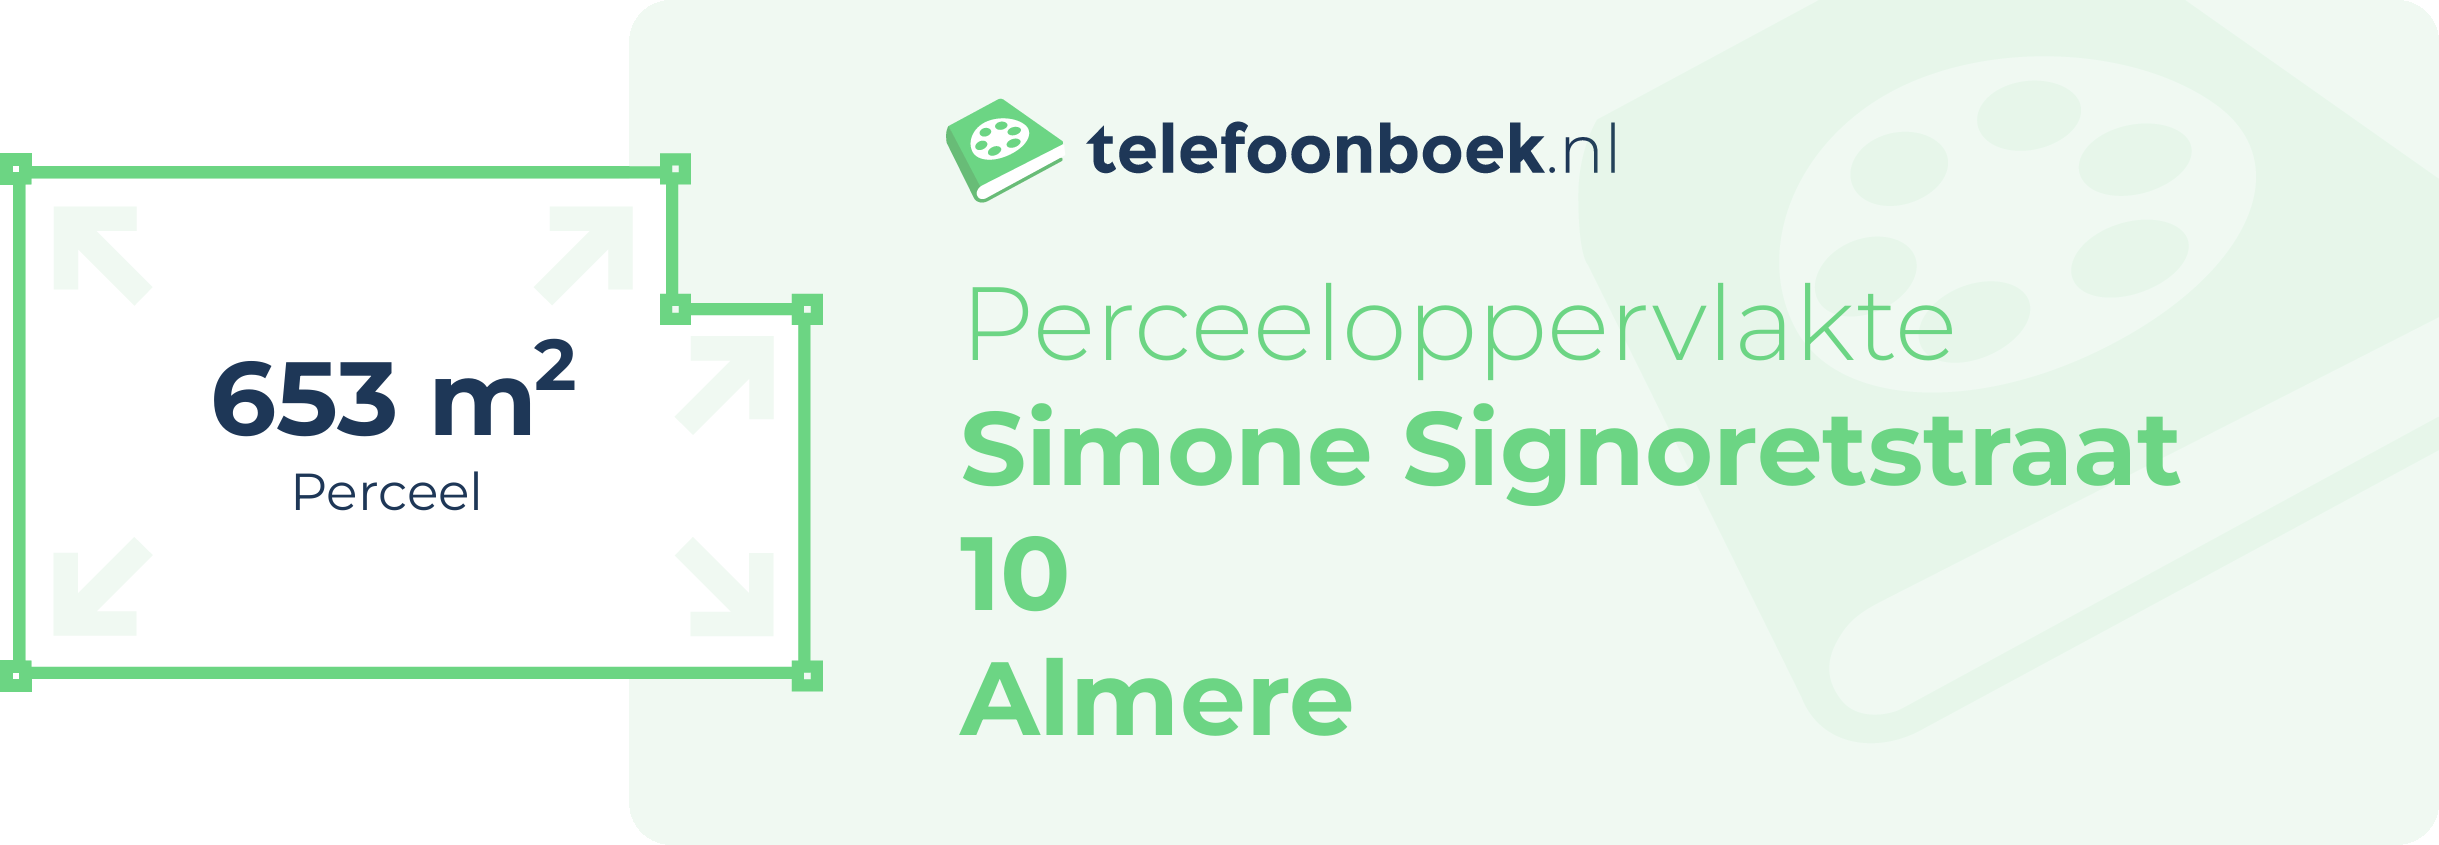 Perceeloppervlakte Simone Signoretstraat 10 Almere